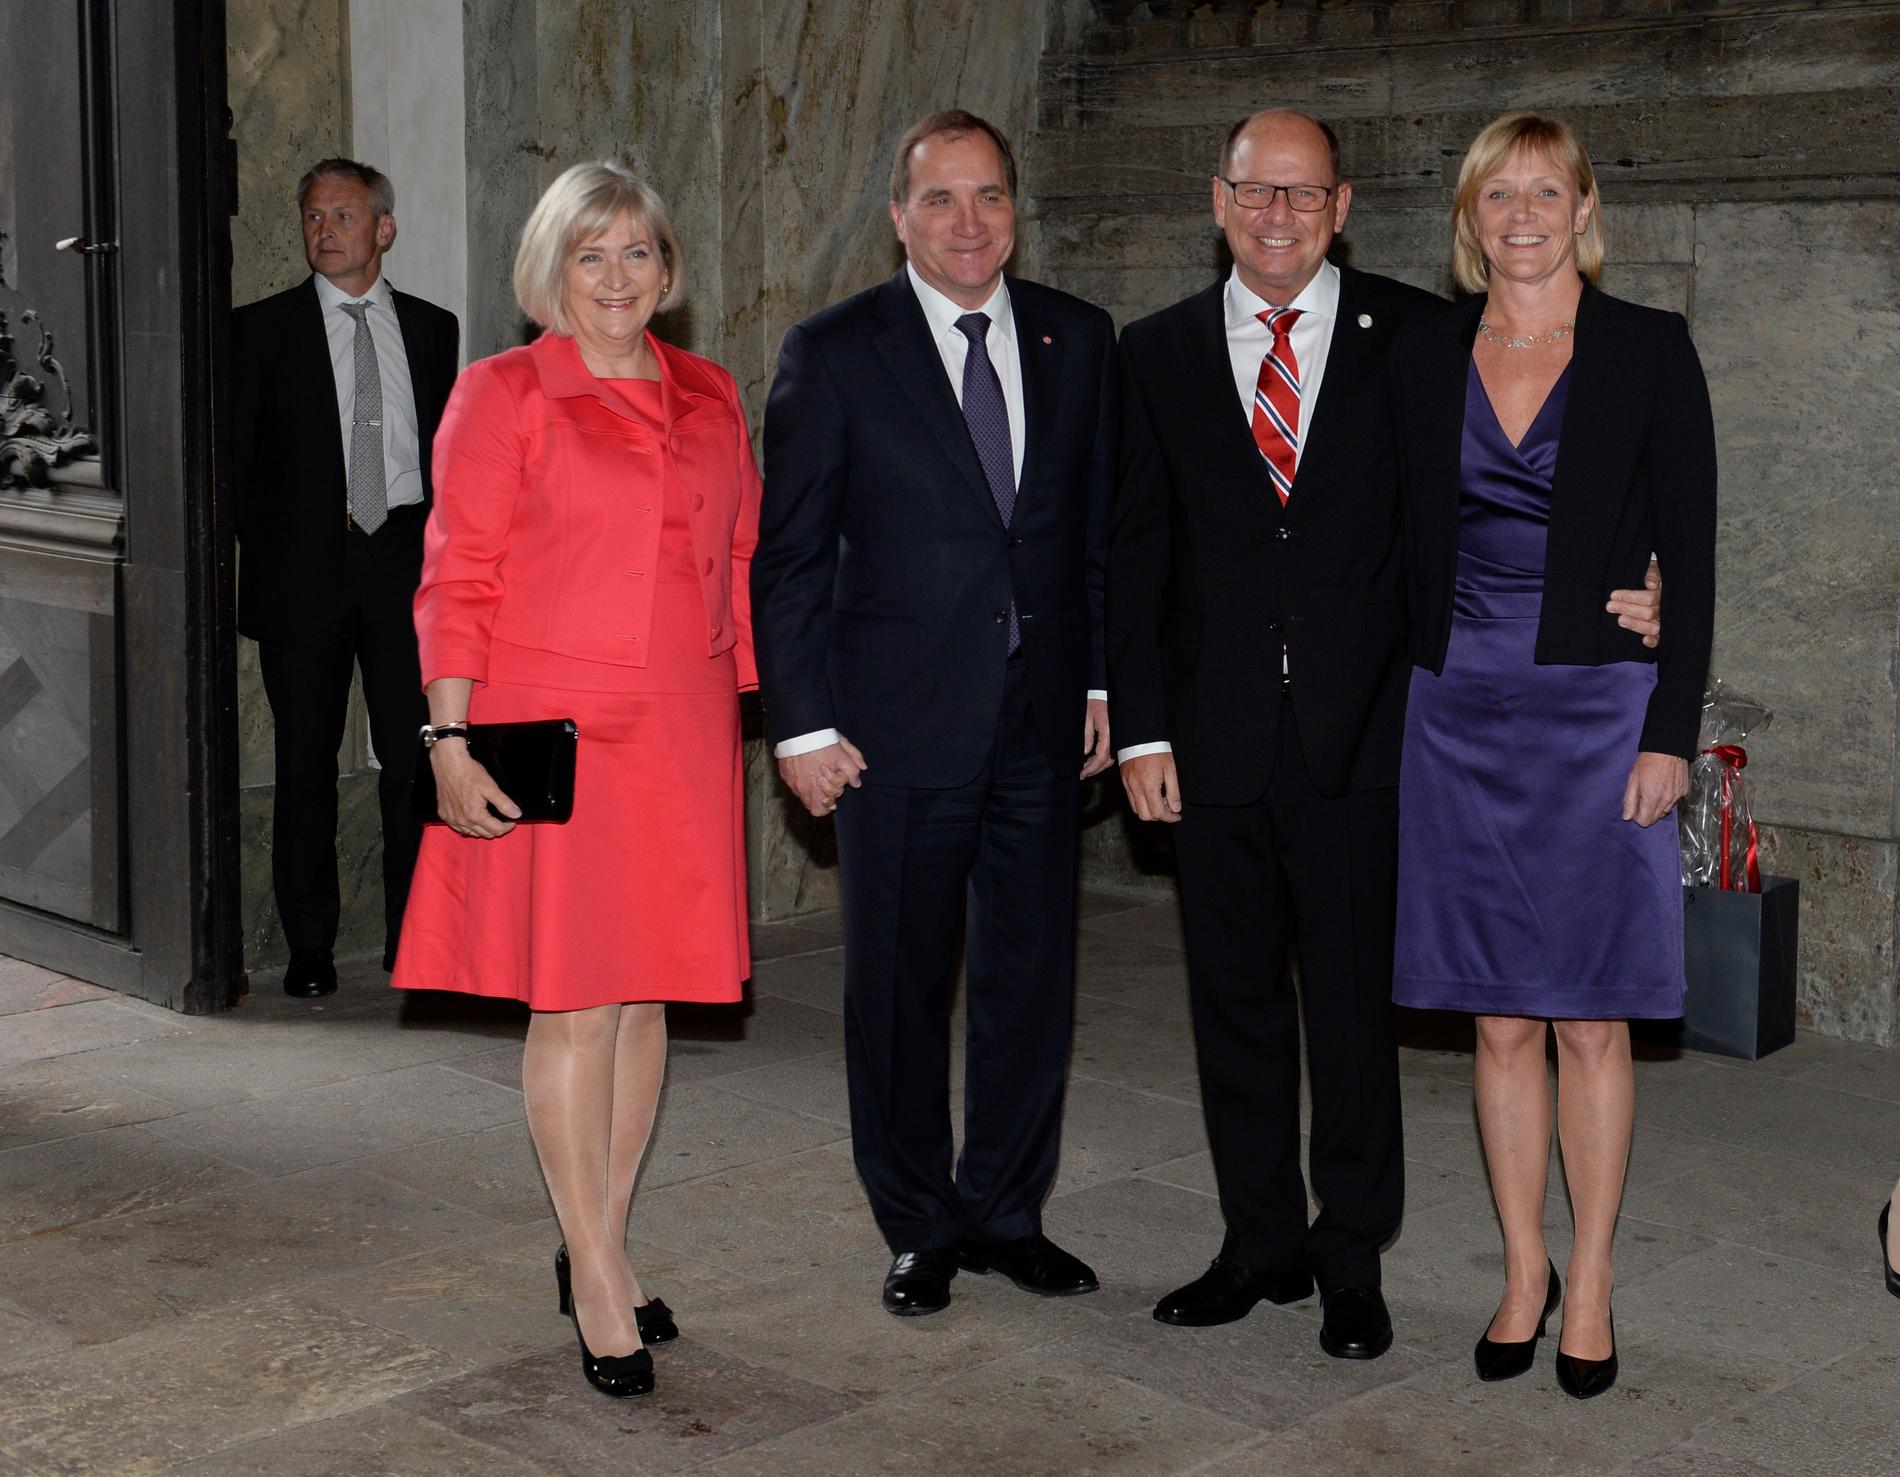 Ulla och Stefan Löfven tillsammans med Riksdagens talman Urban och hans fru Jenni Ahlin.